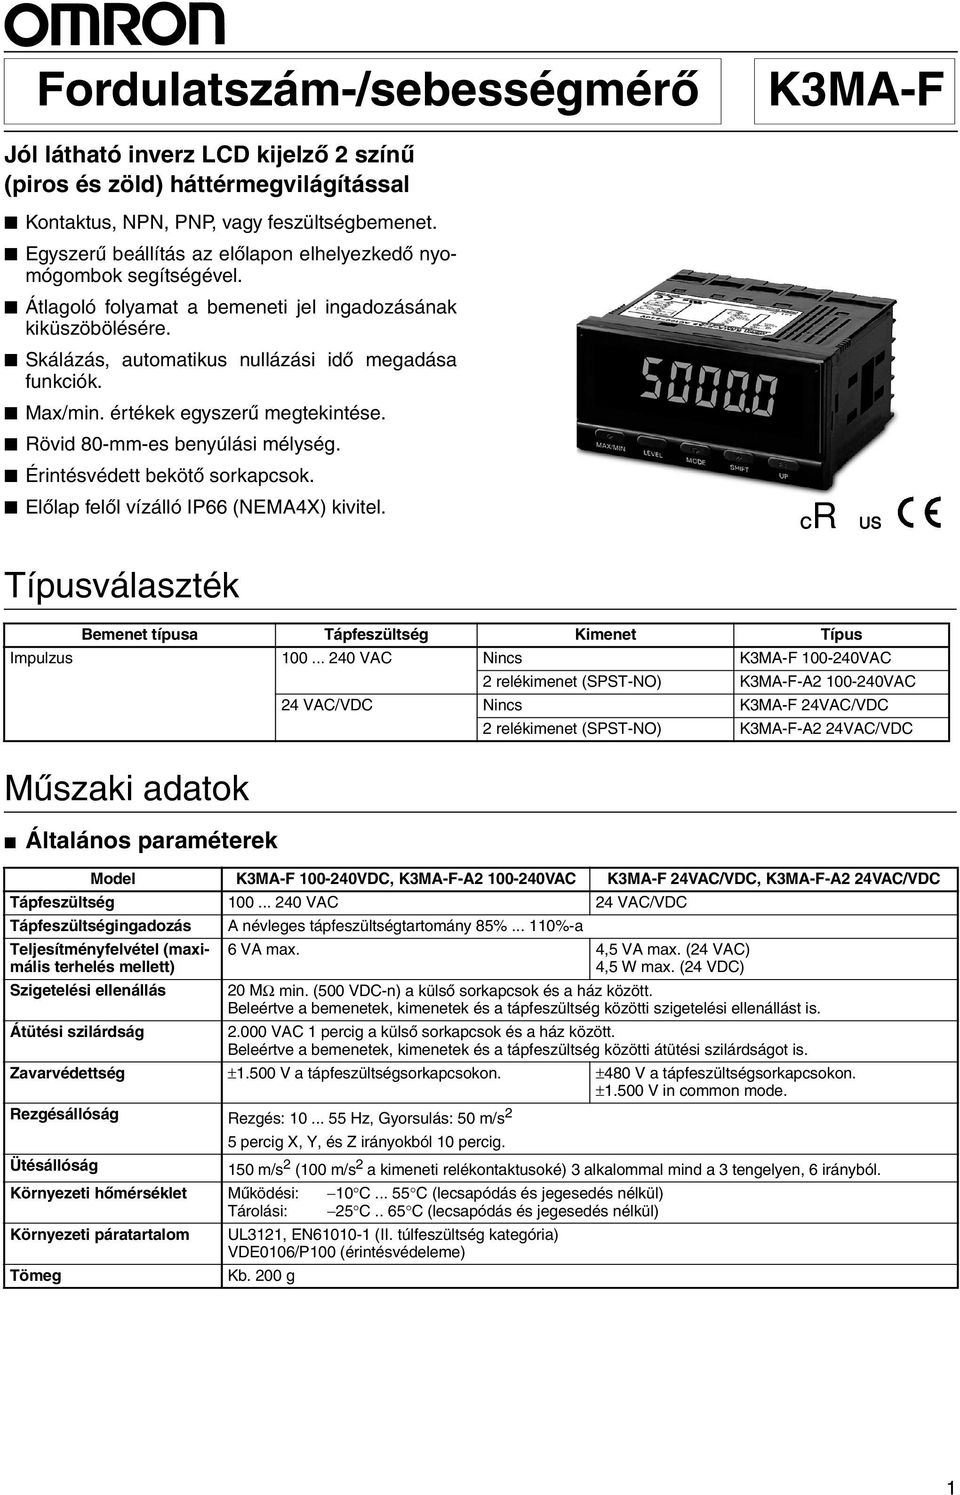 Fordulatszám-/sebességmérõ - PDF Ingyenes letöltés